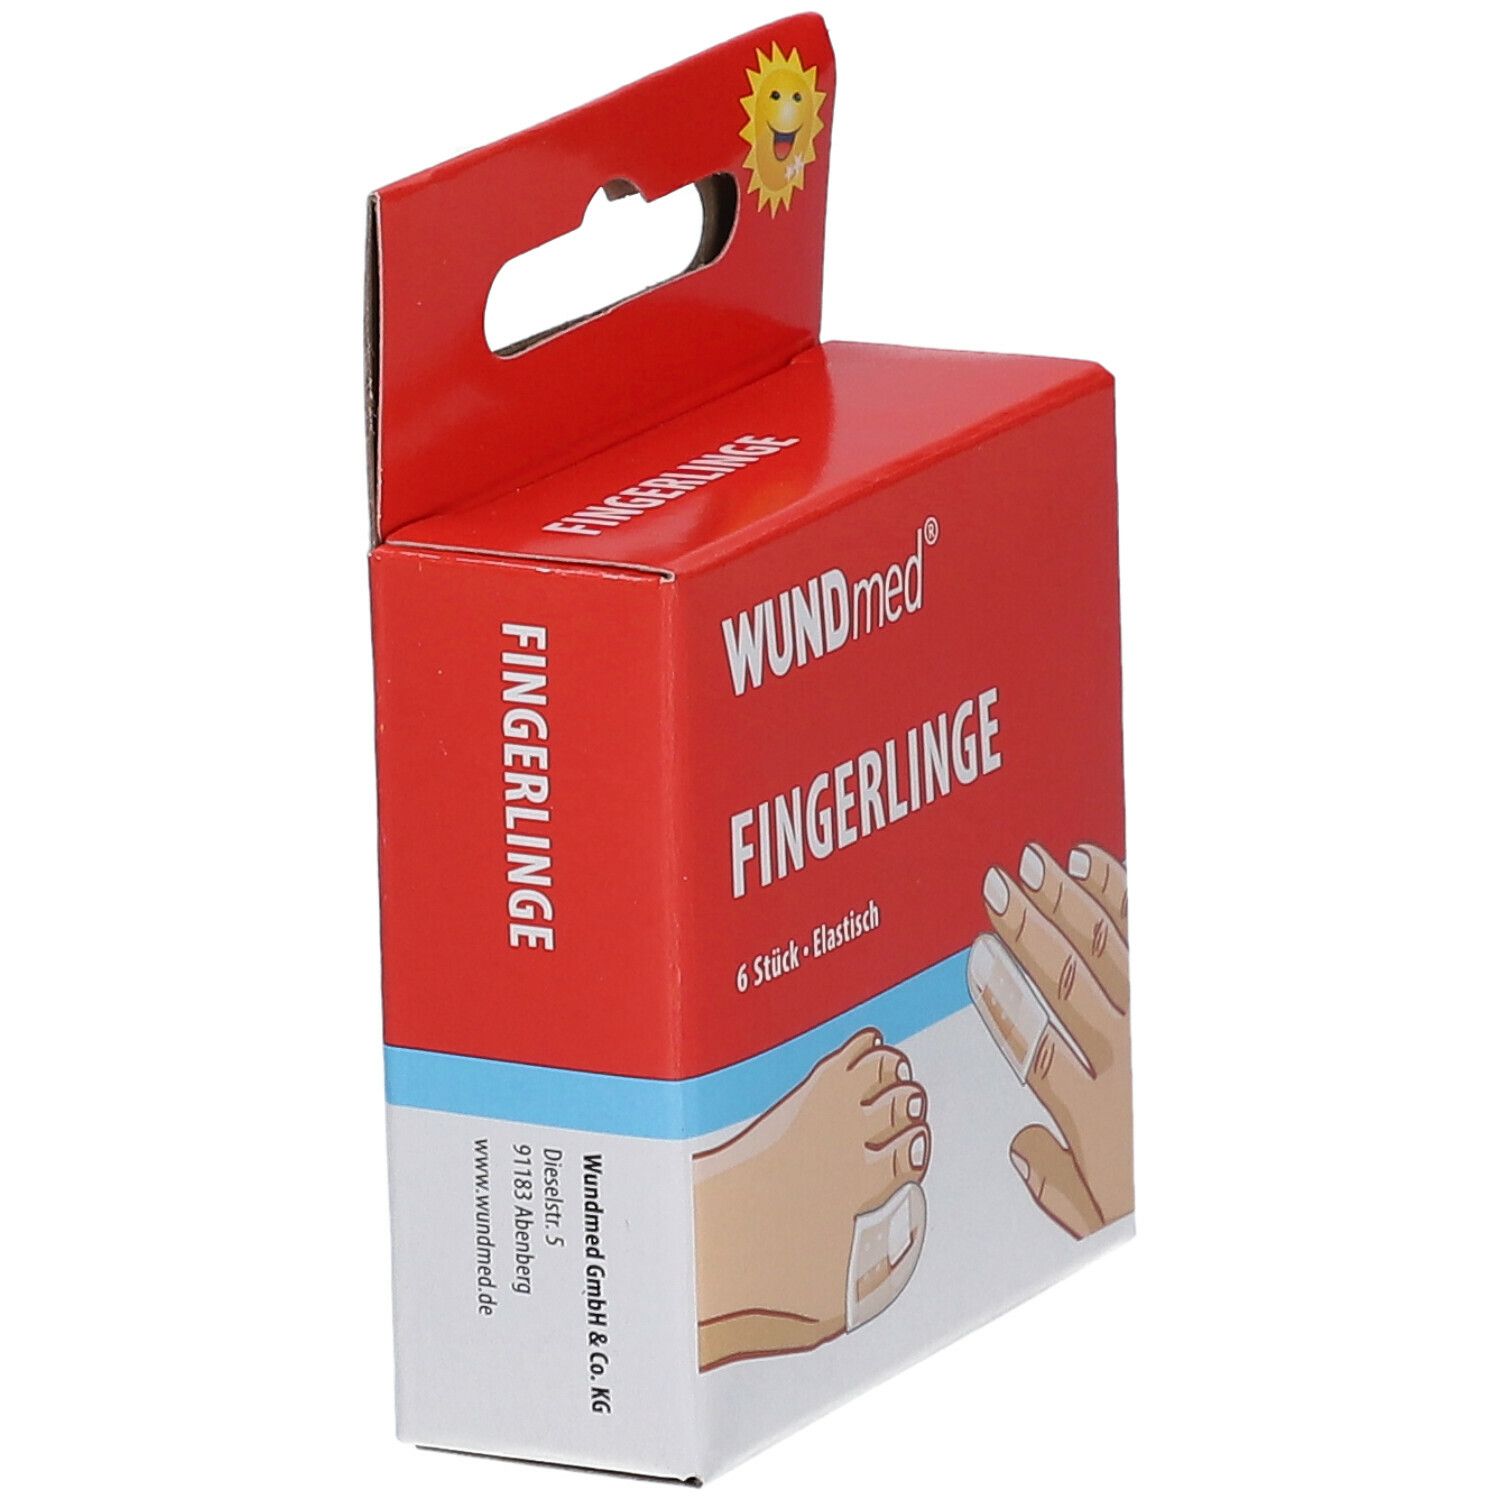 WUNDmed® Fingerlinge 6 St - SHOP APOTHEKE